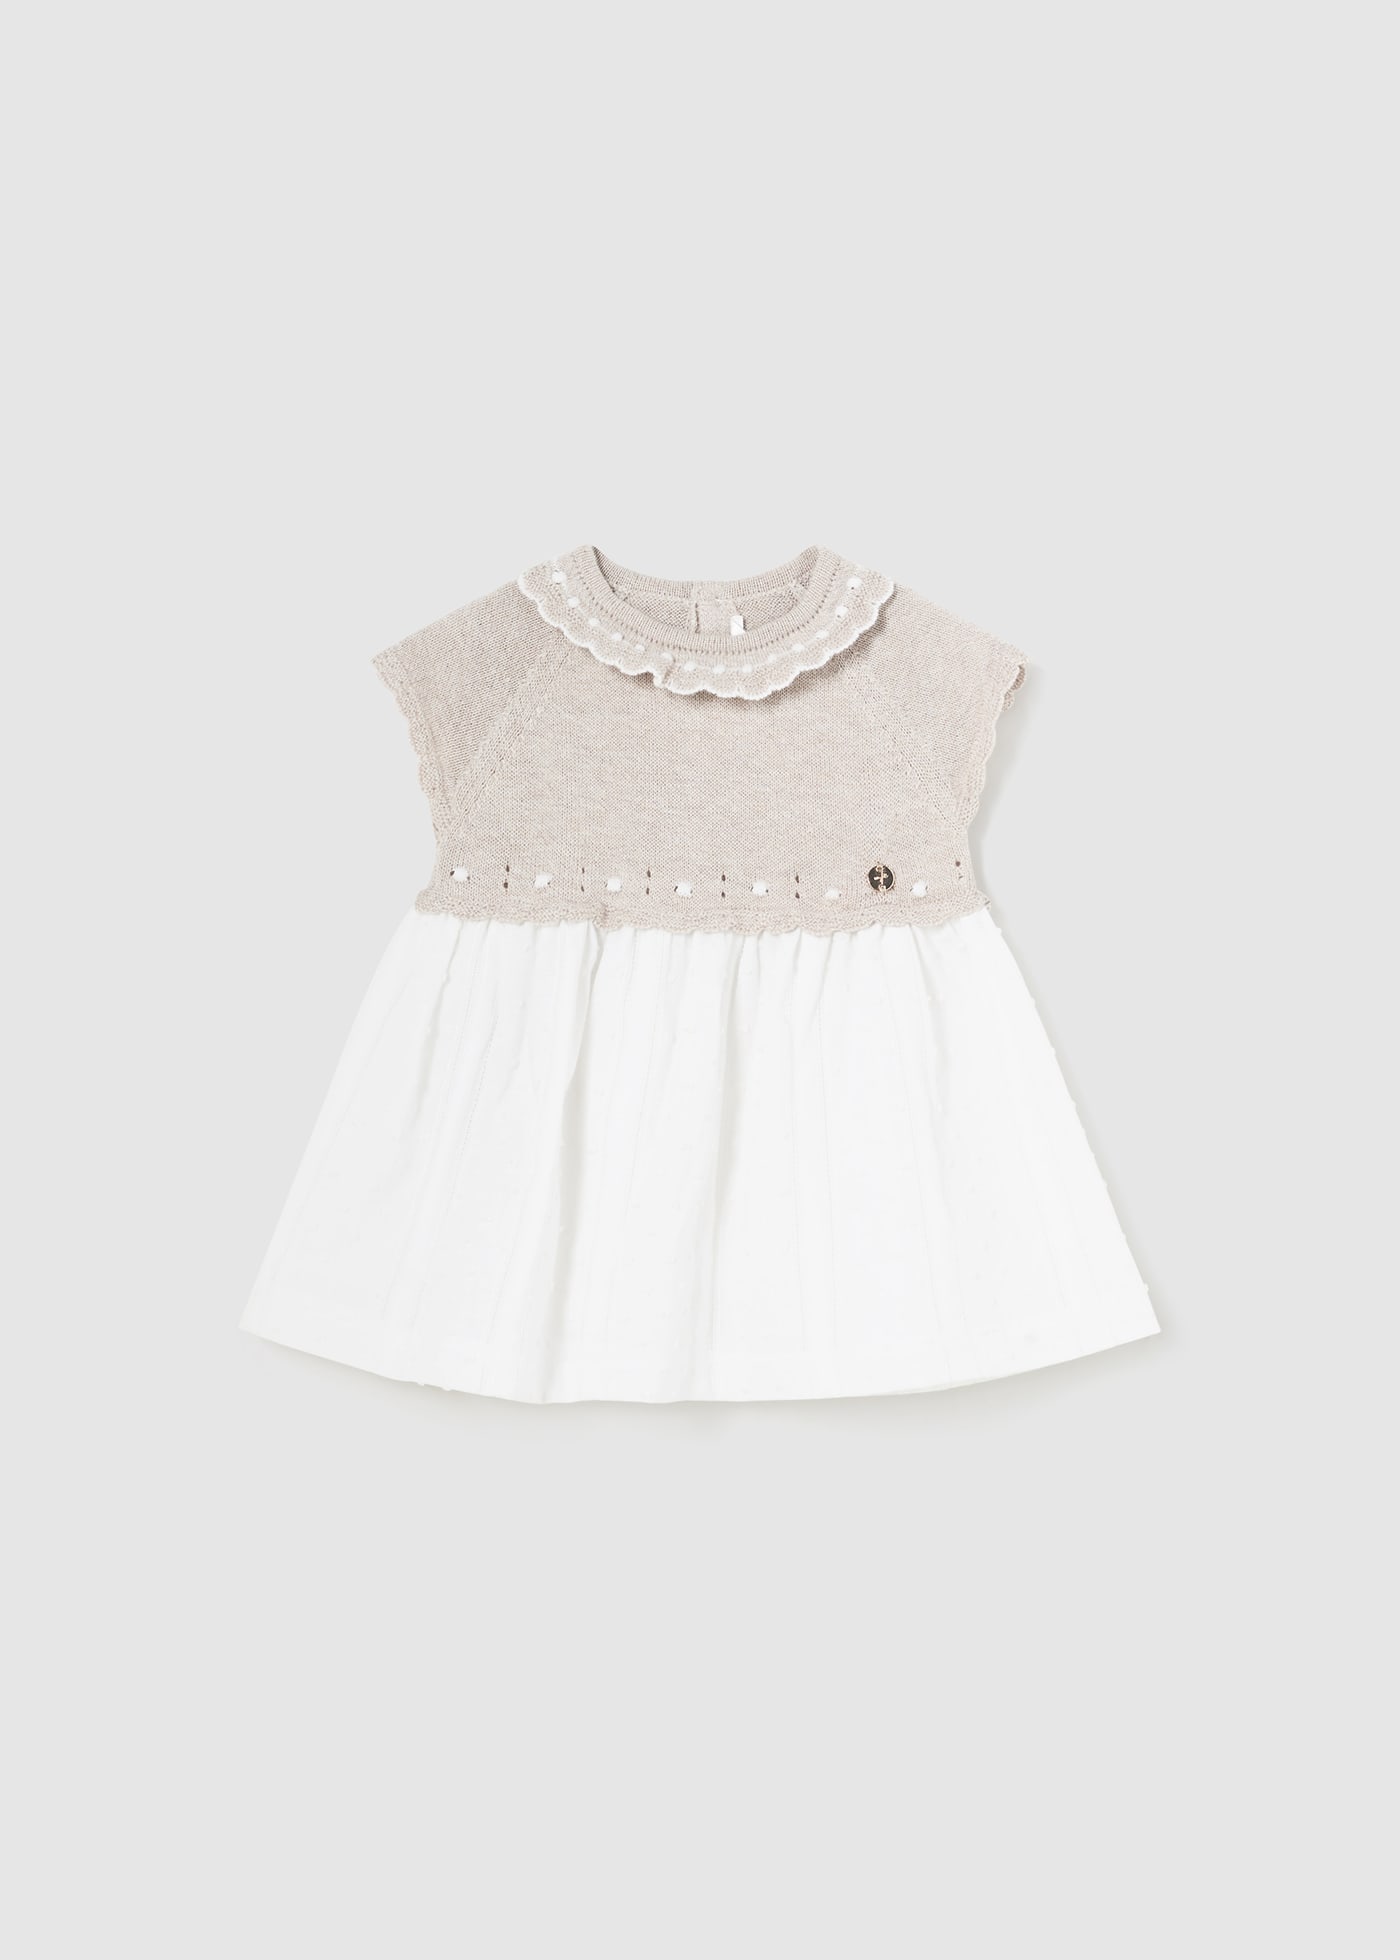 Kleid kombiniert Better Cotton Neugeborene